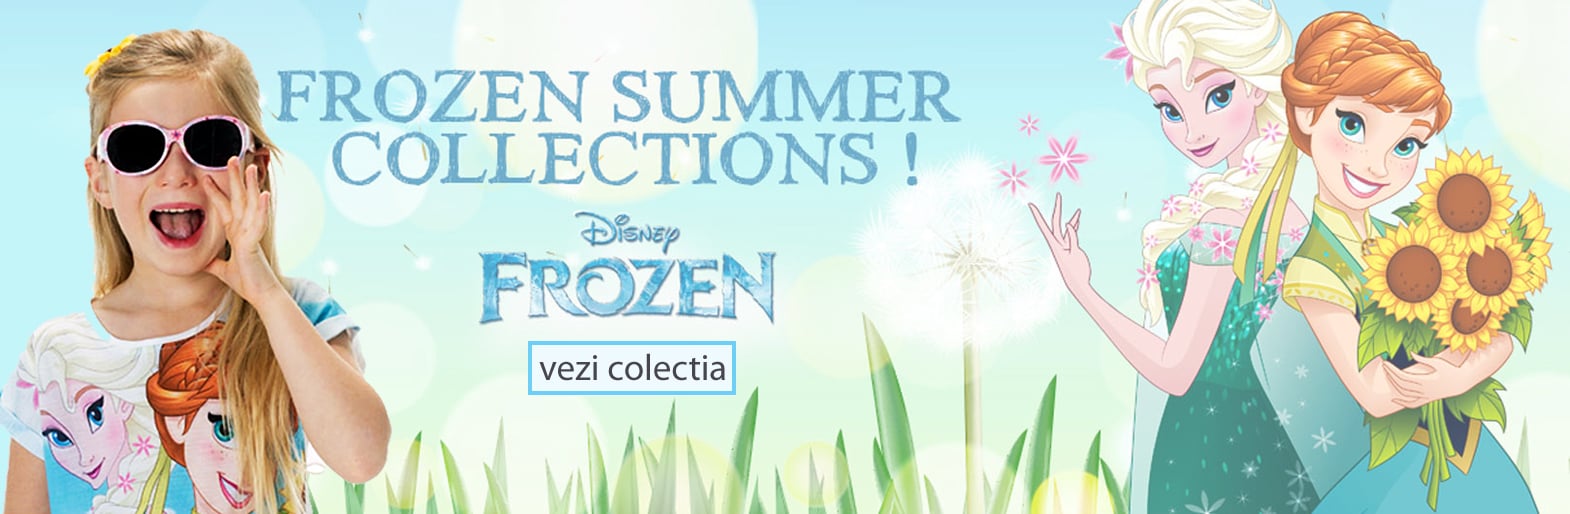 Descopera colectia Frozen pentru fetite la Tiffany Kids